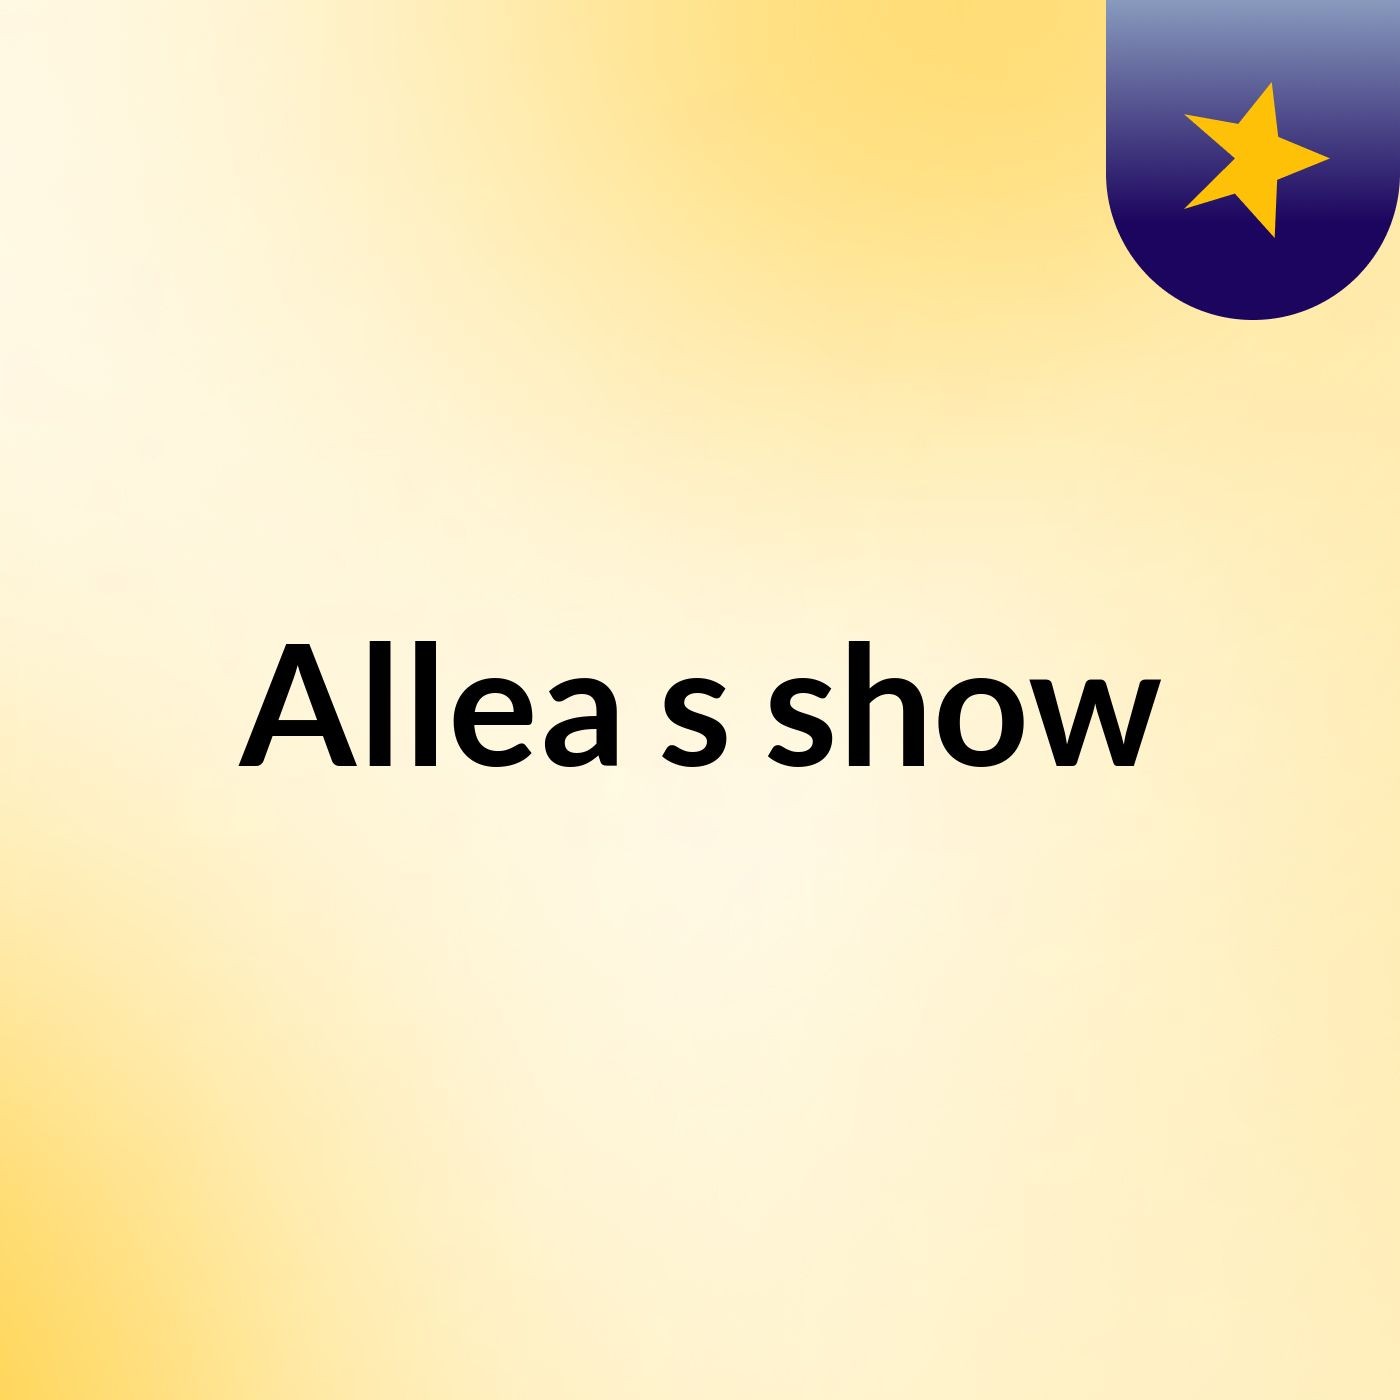 Episode 5 - Allea's show